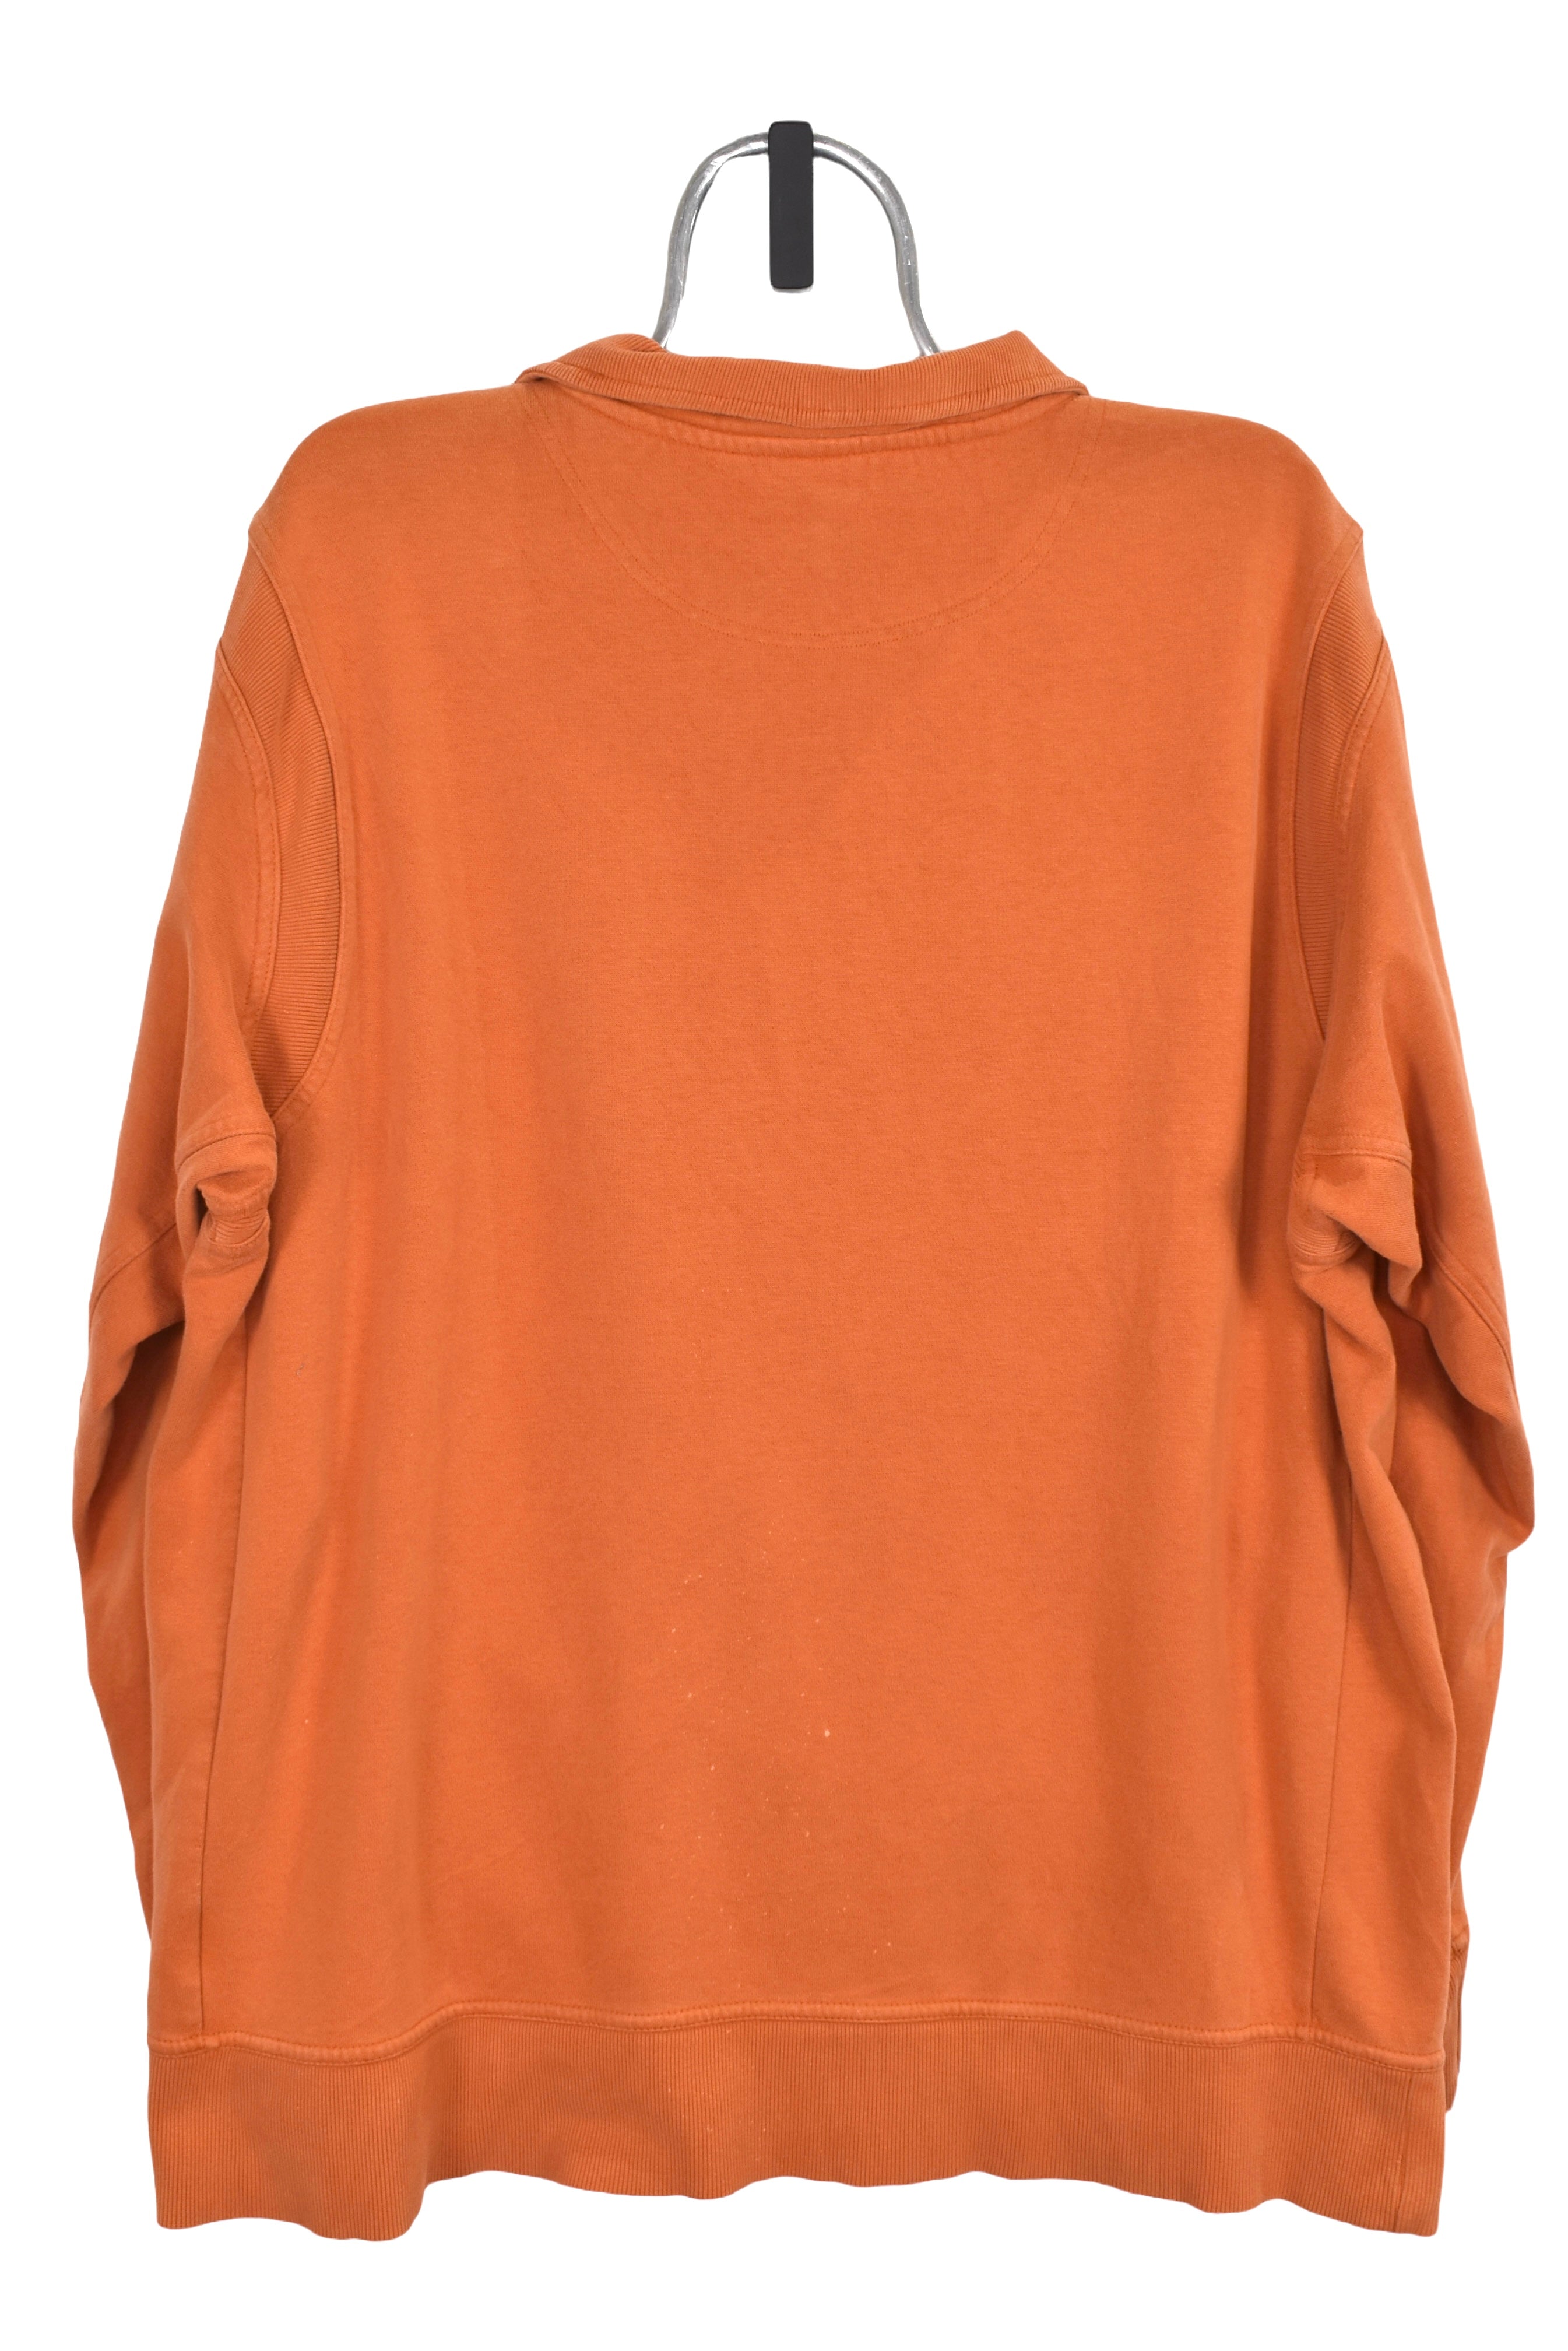 Vintage Texas Longhorns 1/4 zip (XL), orange Nike embroidered sweatshirt